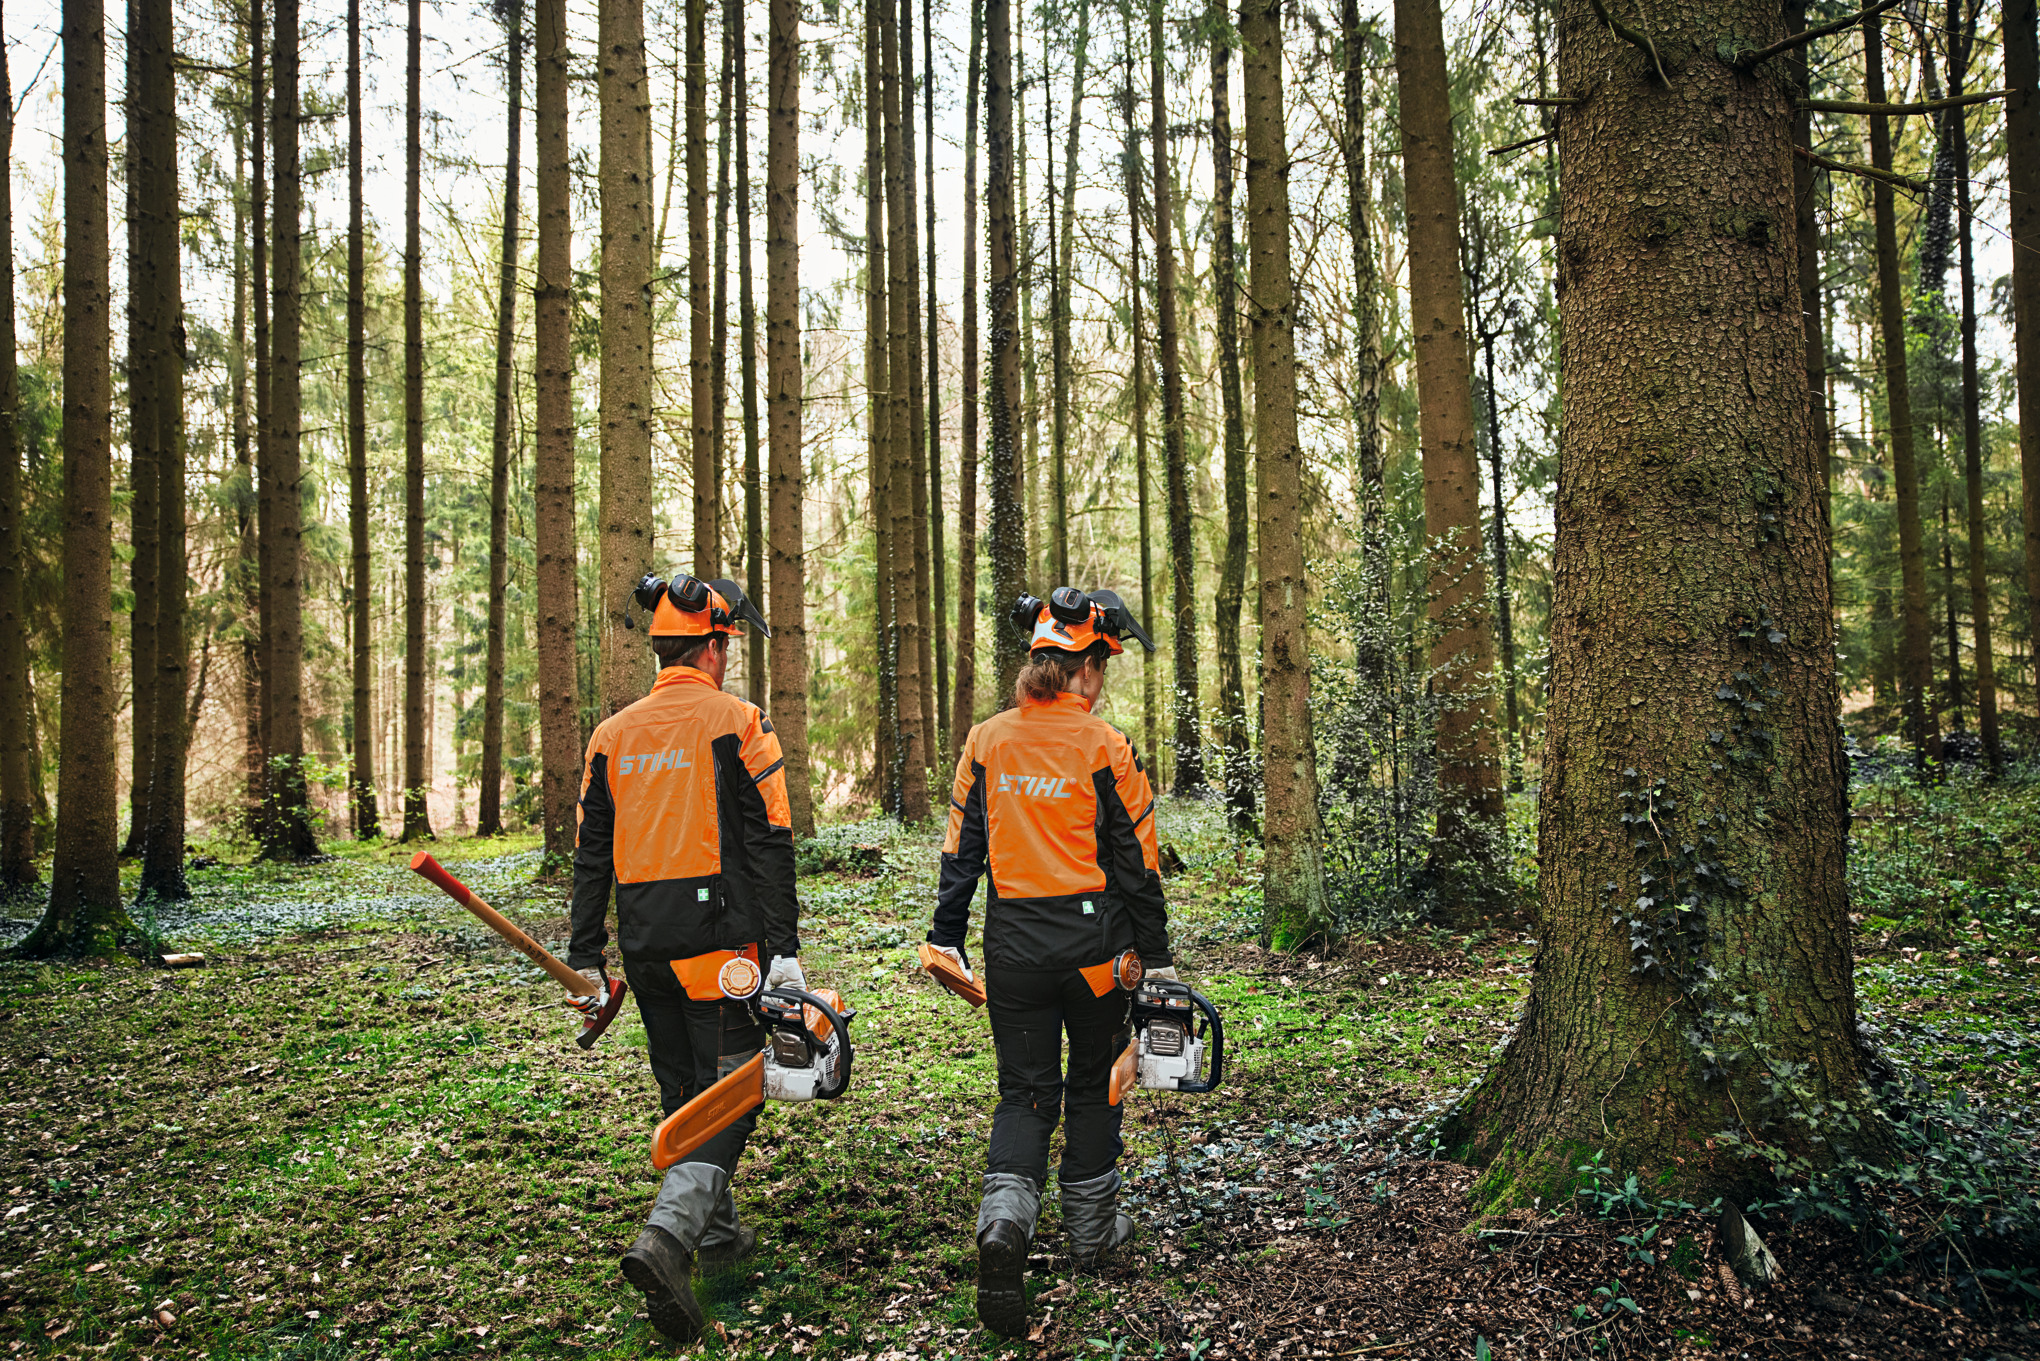 Zwei Personen im Wald in Schutzausrüstung mit Motorsägen und Axt.